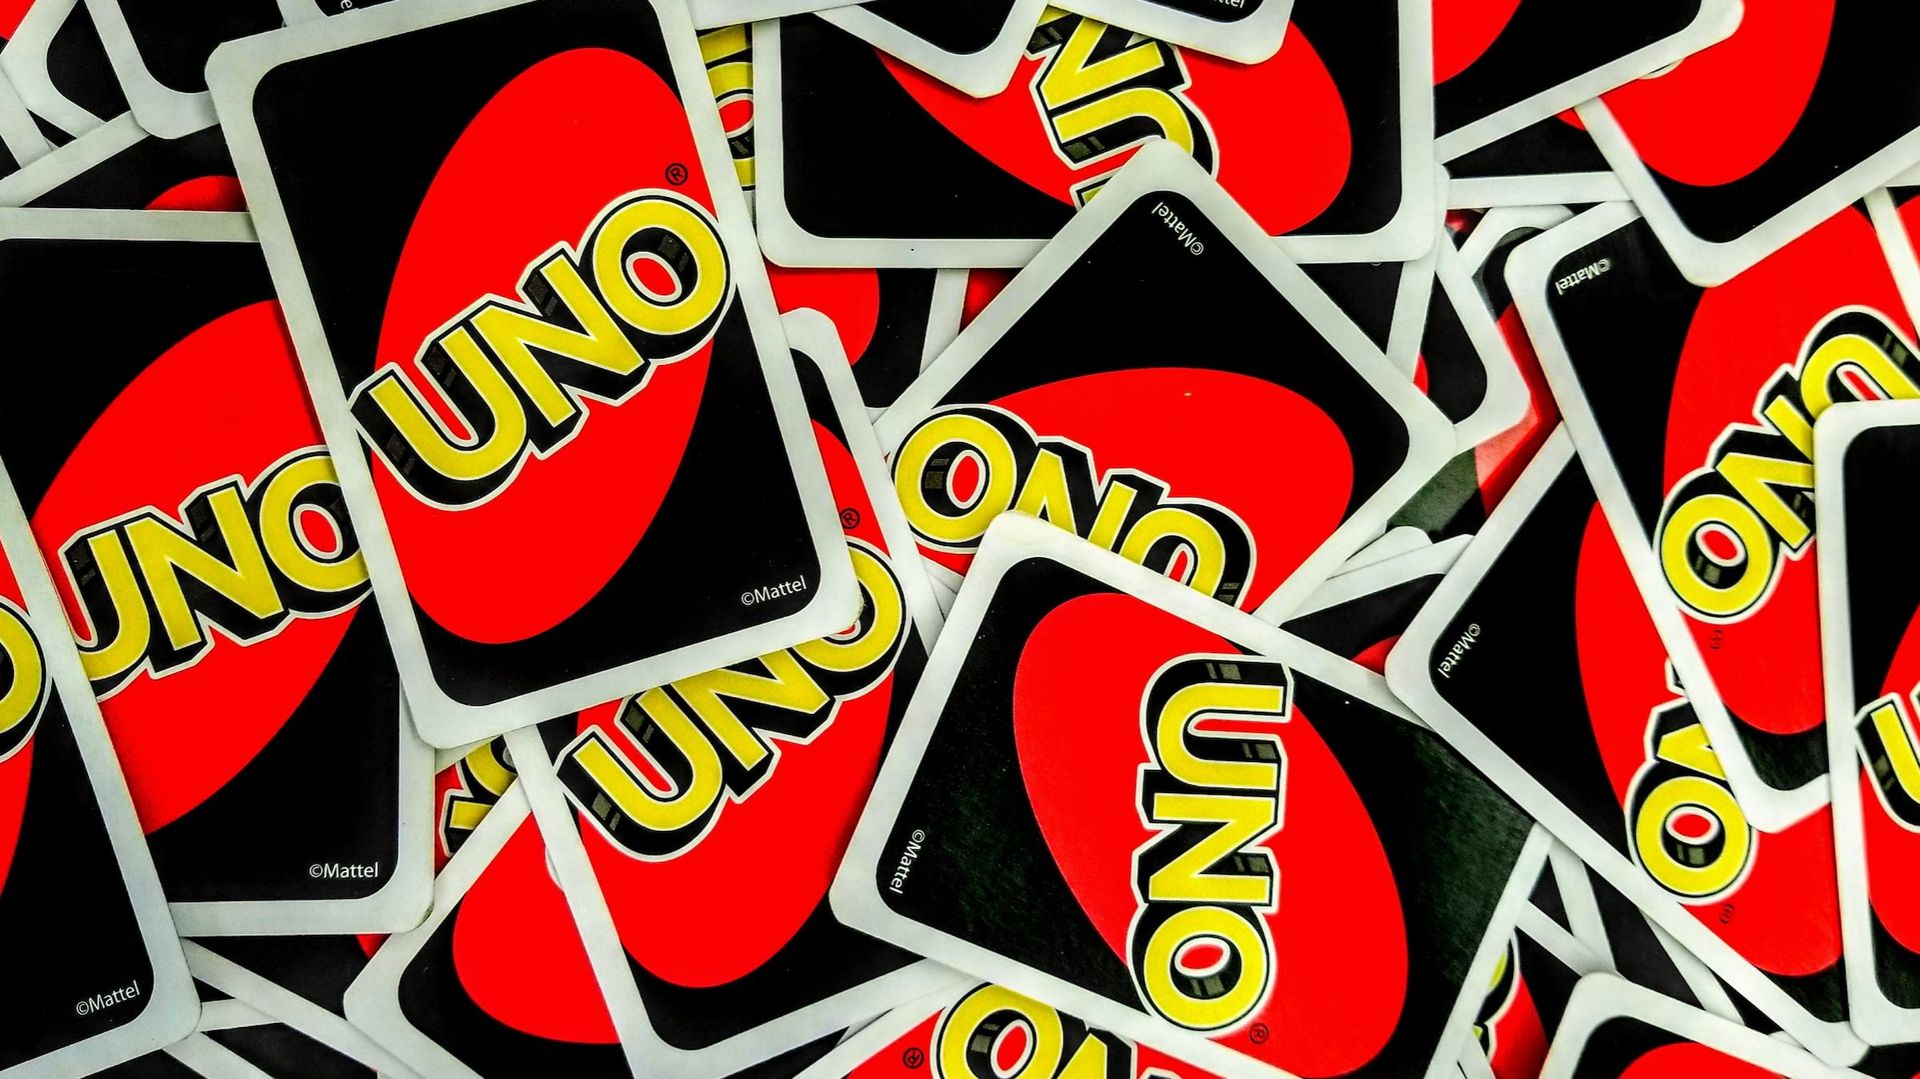 La minute insolite : Mattel cherche un influenceur pour son jeu Uno et  offre un salaire considérable 